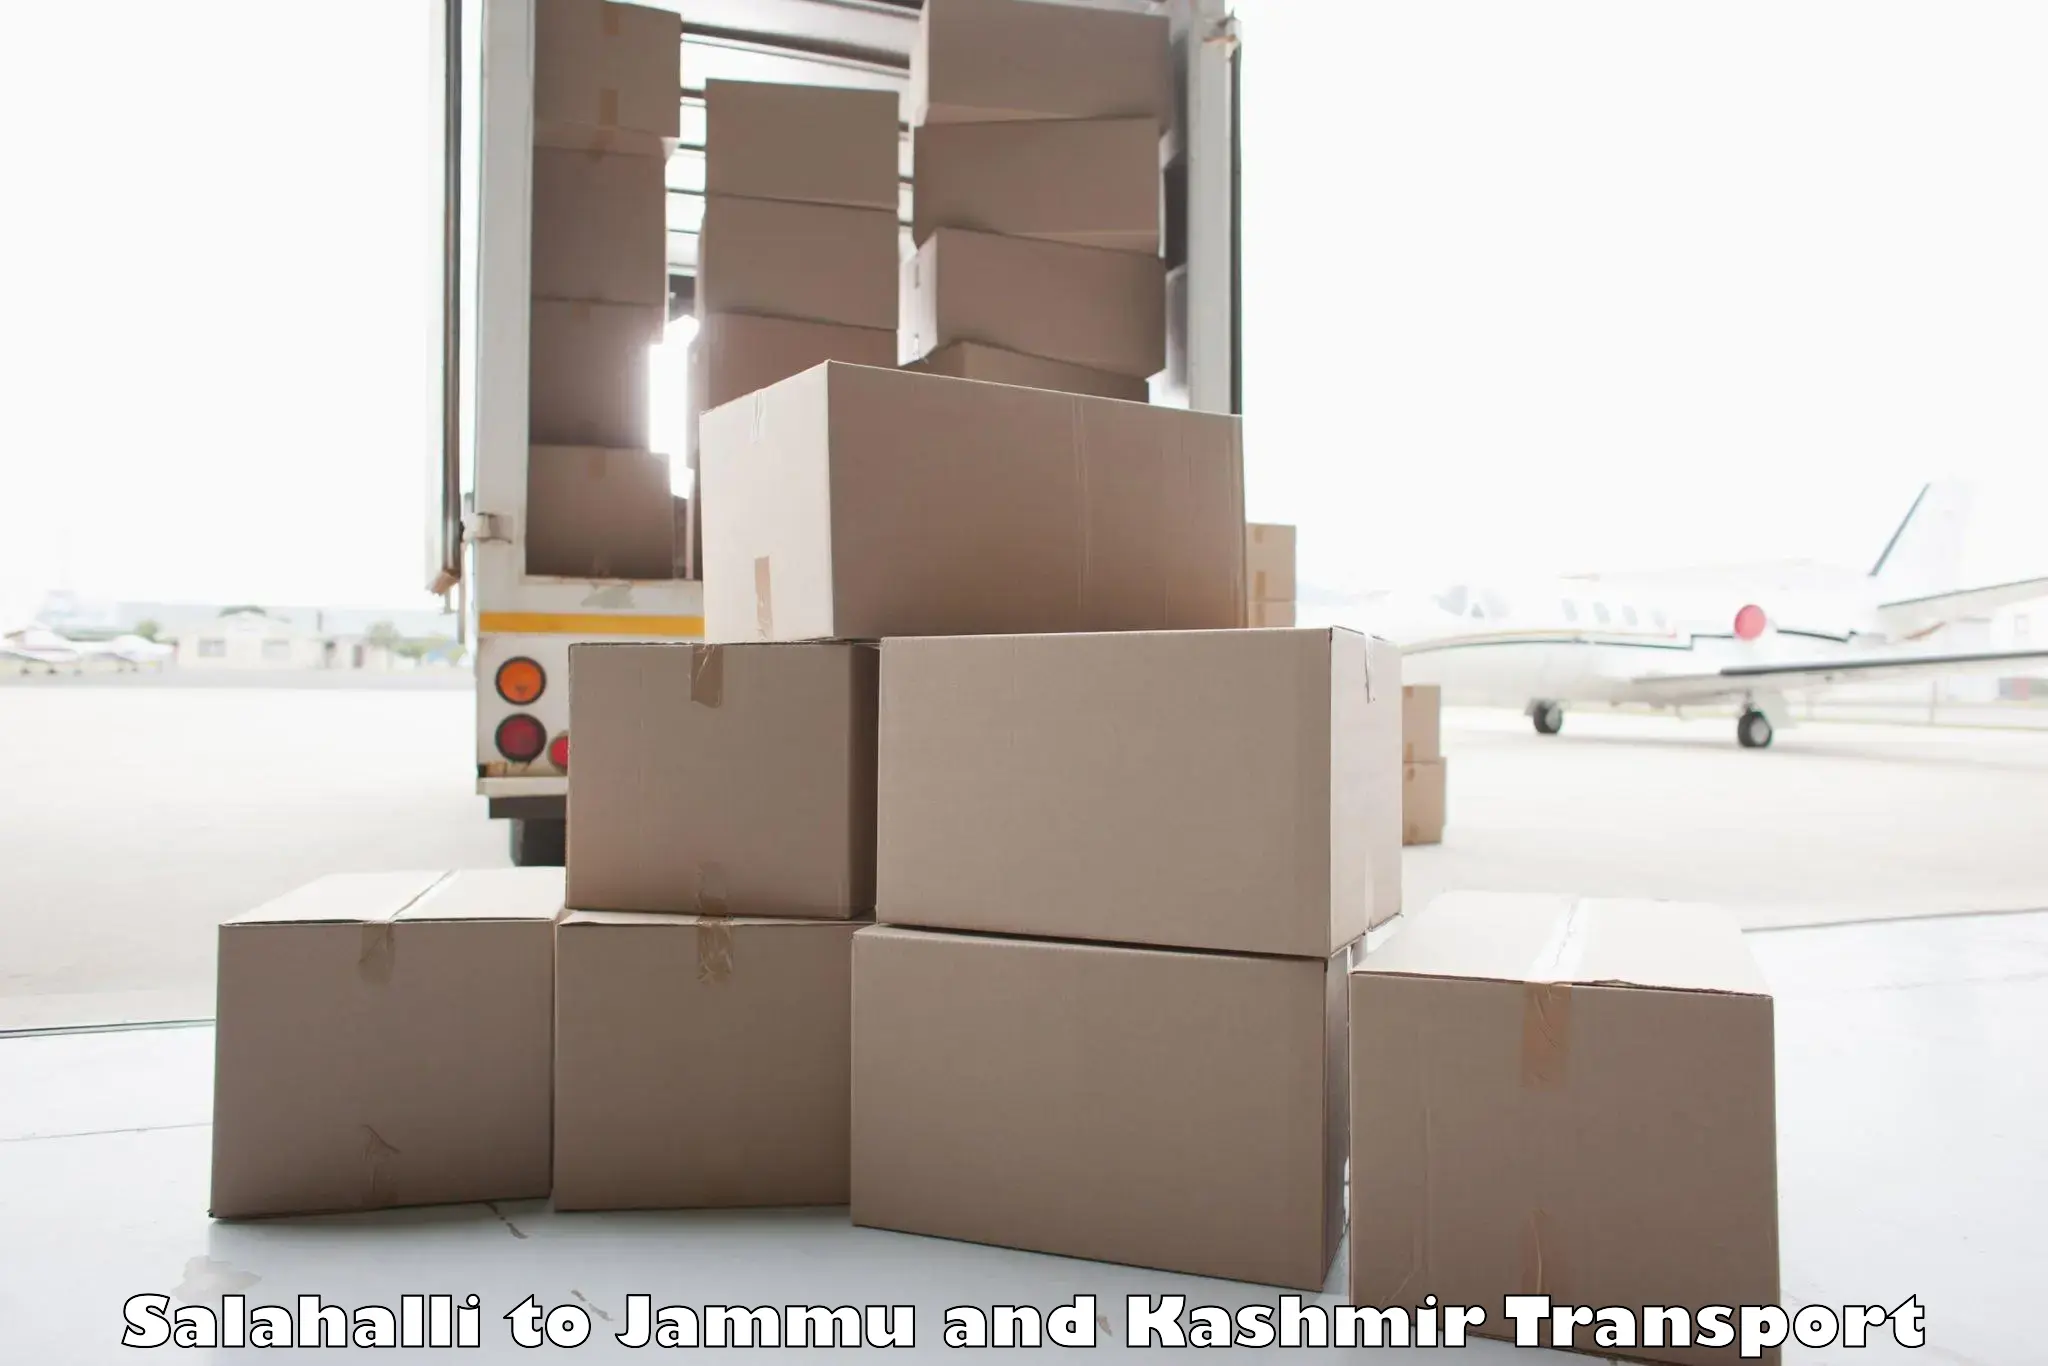 Cargo transport services Salahalli to Anantnag